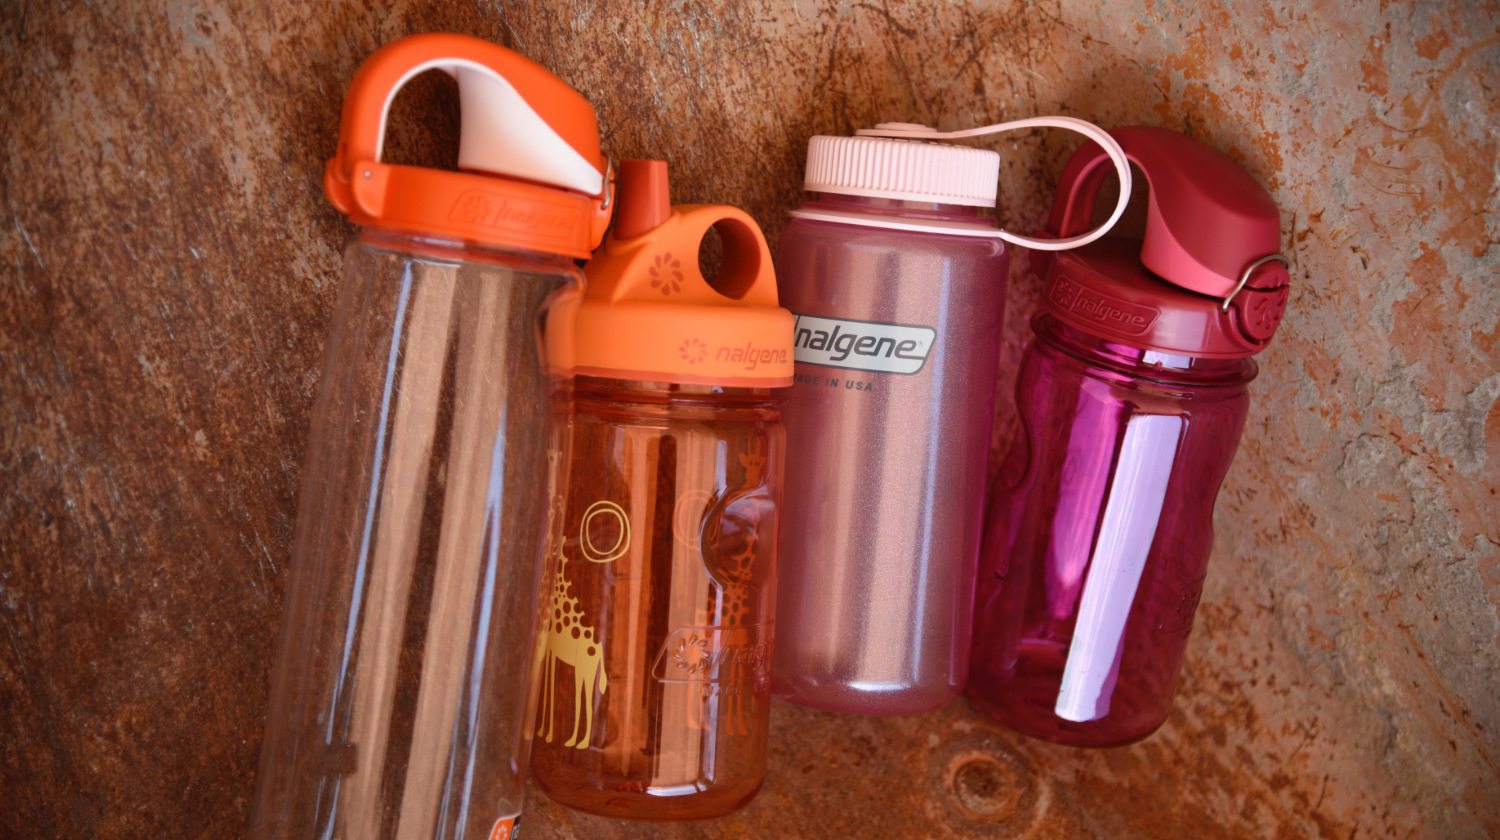 Nalgene water bottles for back-to-school